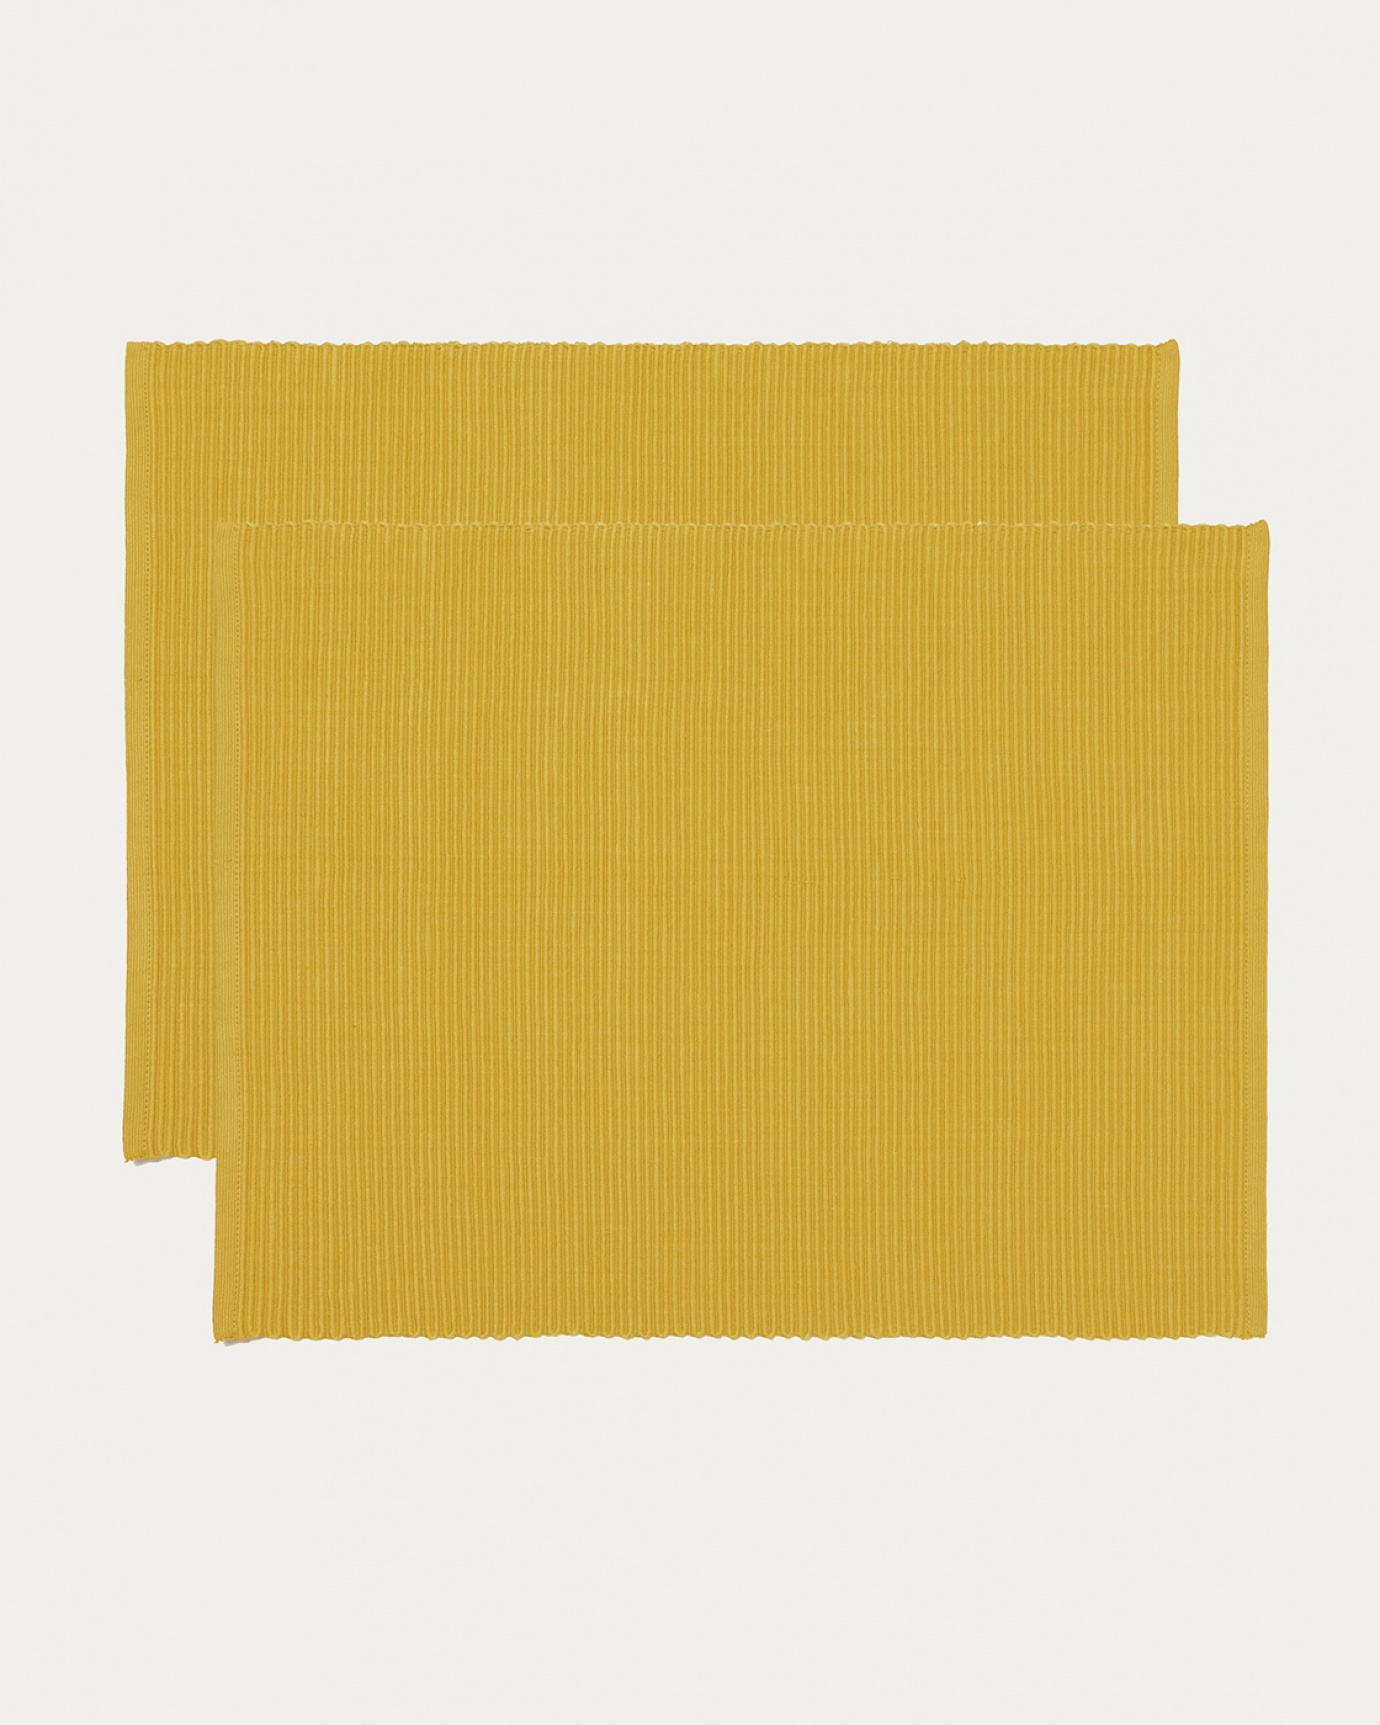 Image du produit set de table UNI jaune moutarde en coton doux de qualité côtelée de LINUM DESIGN. Taille 35 x 46 cm et vendu en lot de 2.